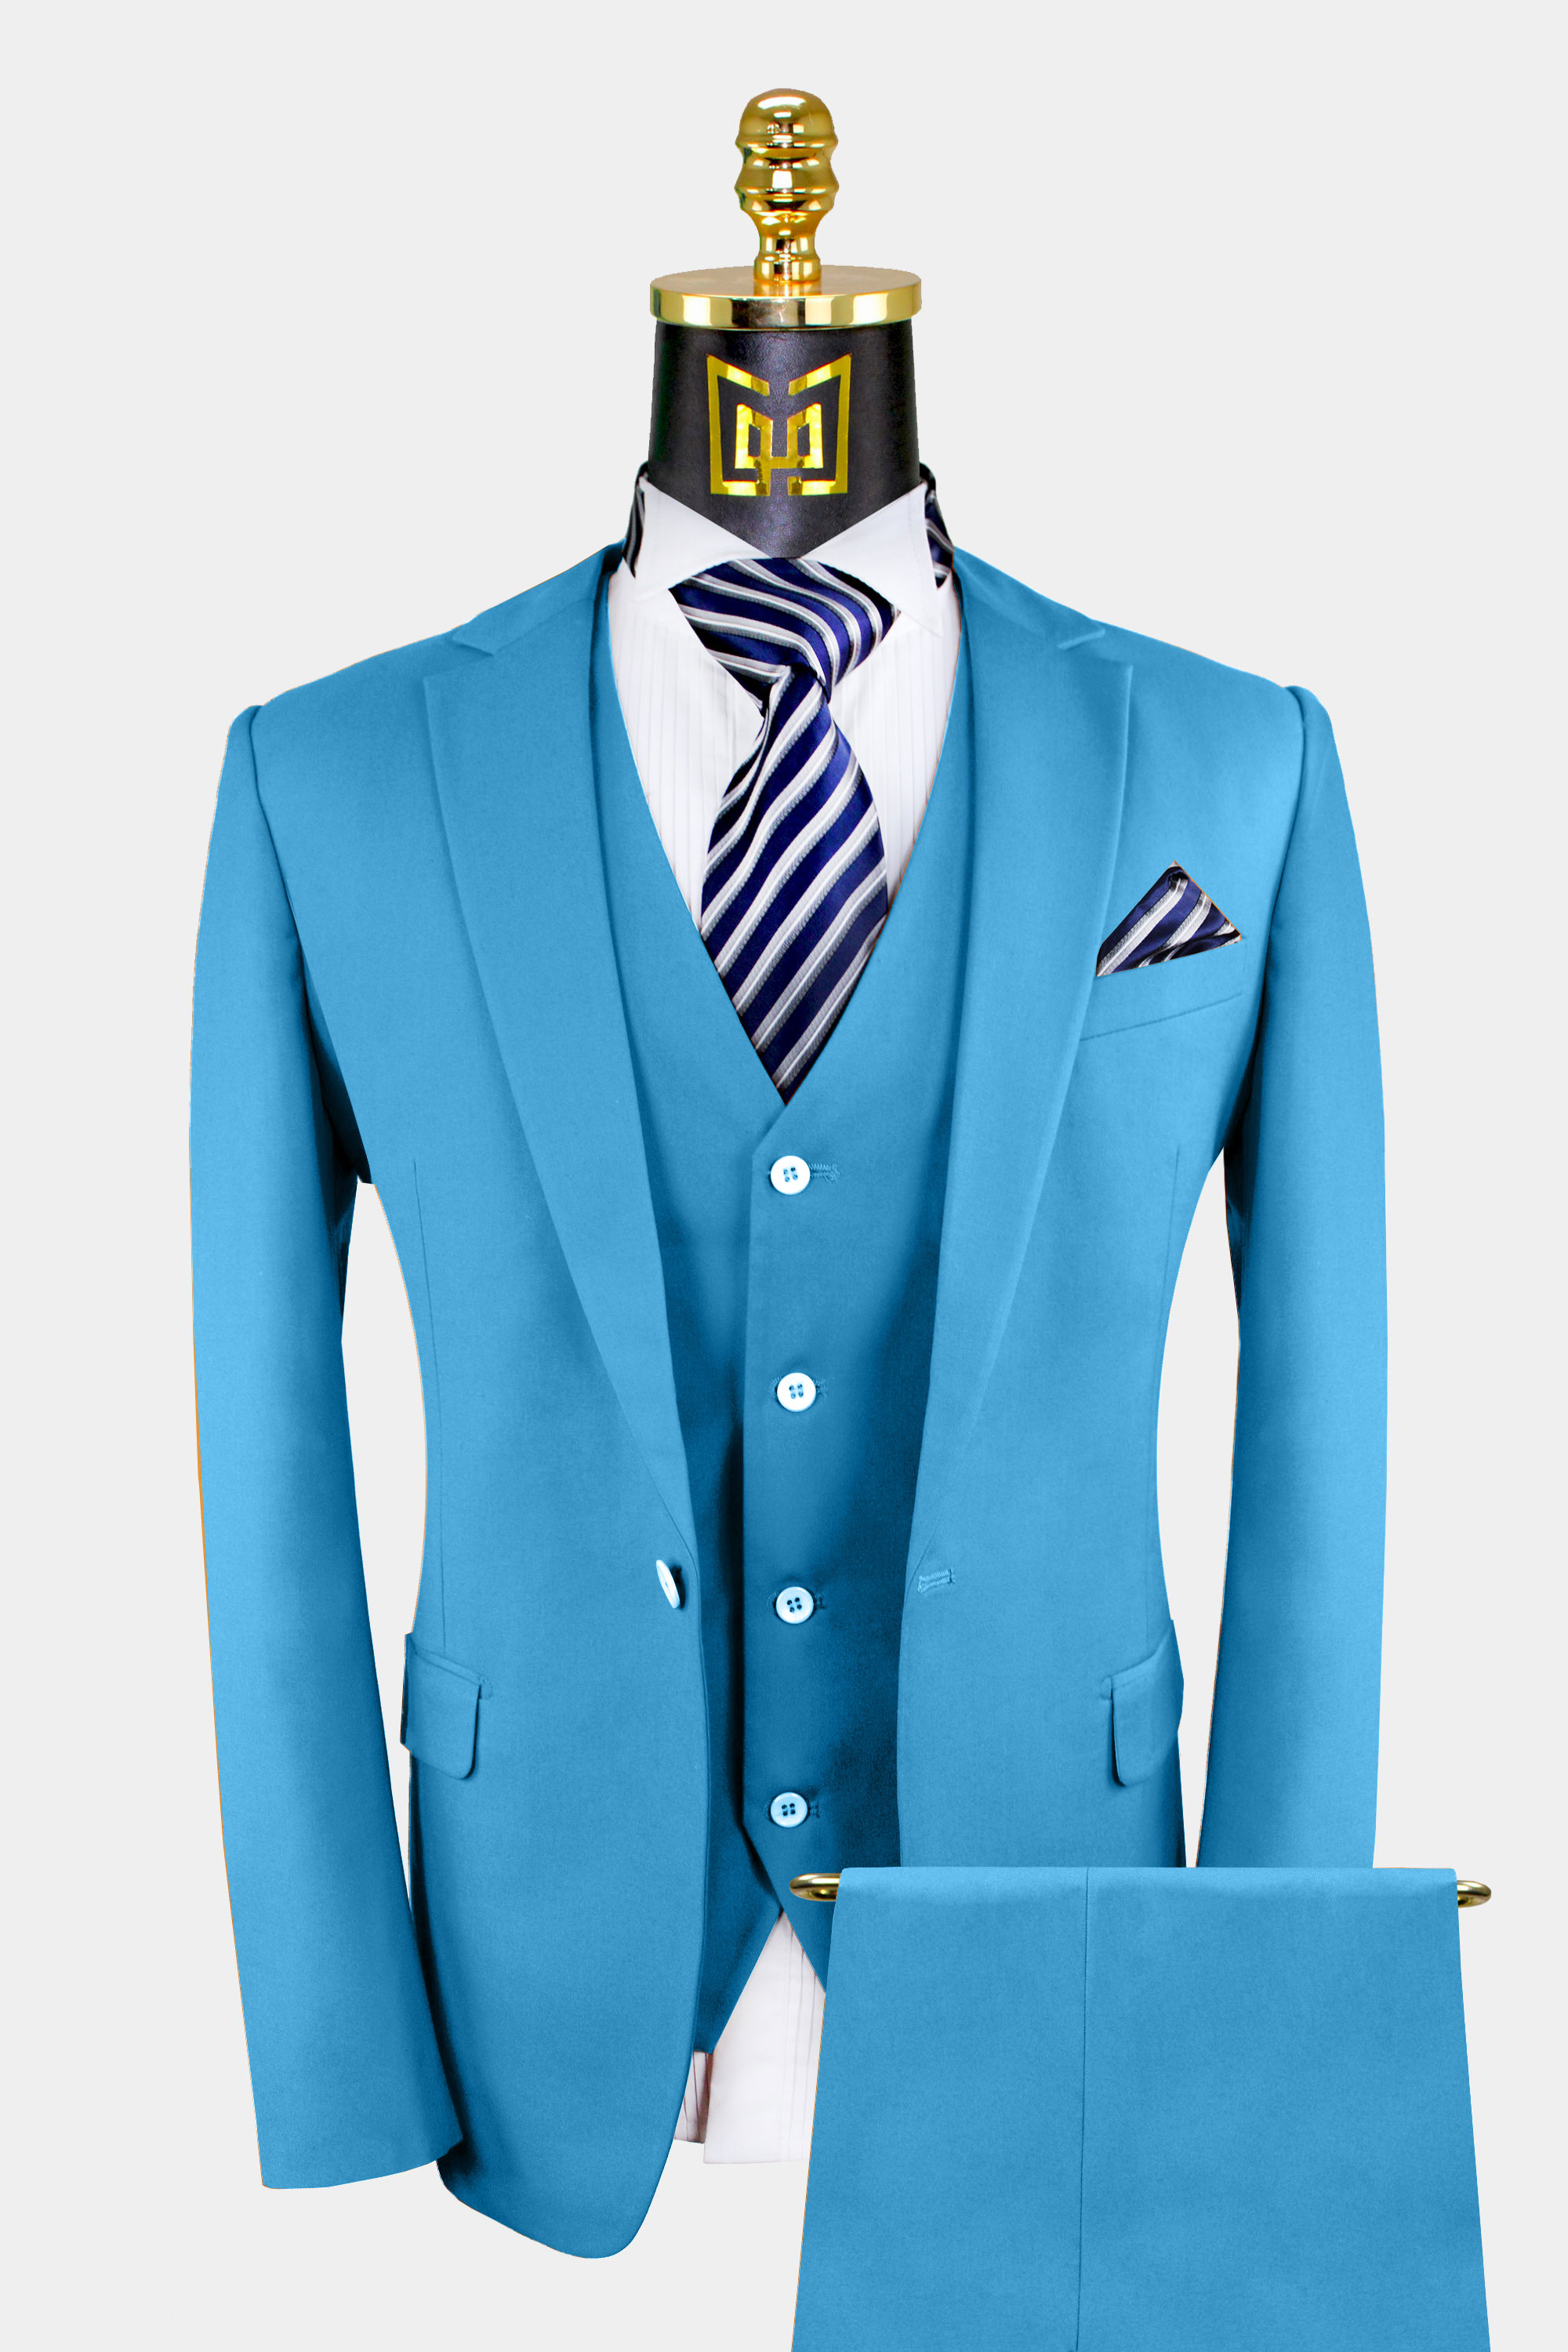 Mens-Light-Blue-Suit-Wedding-Groom-Prom-Suit-Summer-Tuxedo-from-Gentlemansguru.com